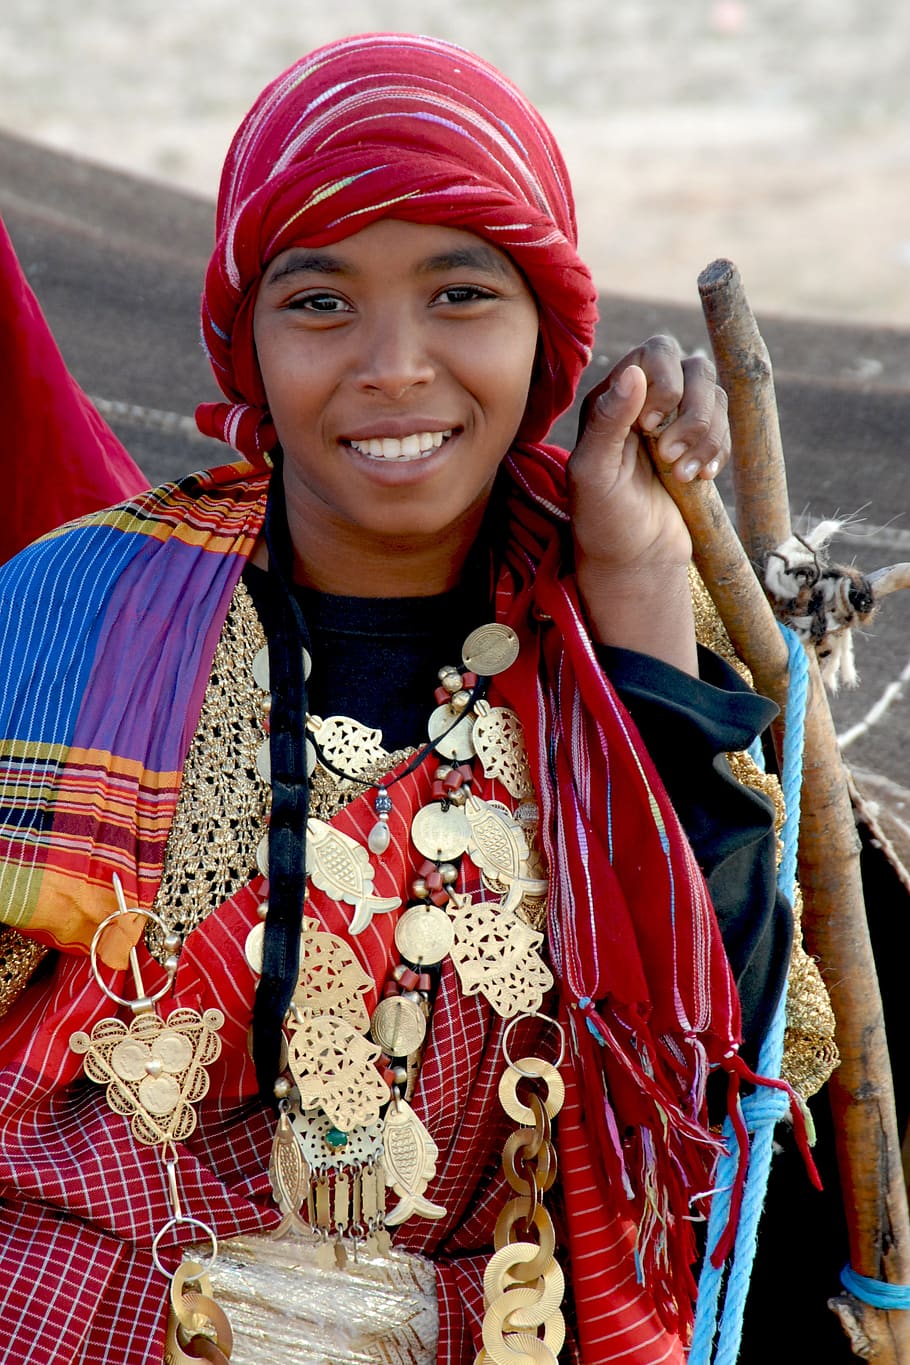 tunísia, mulher, jóias, cultura, amigável, tradicionalmente, sorrindo, olhando para a câmera, uma pessoa, retrato